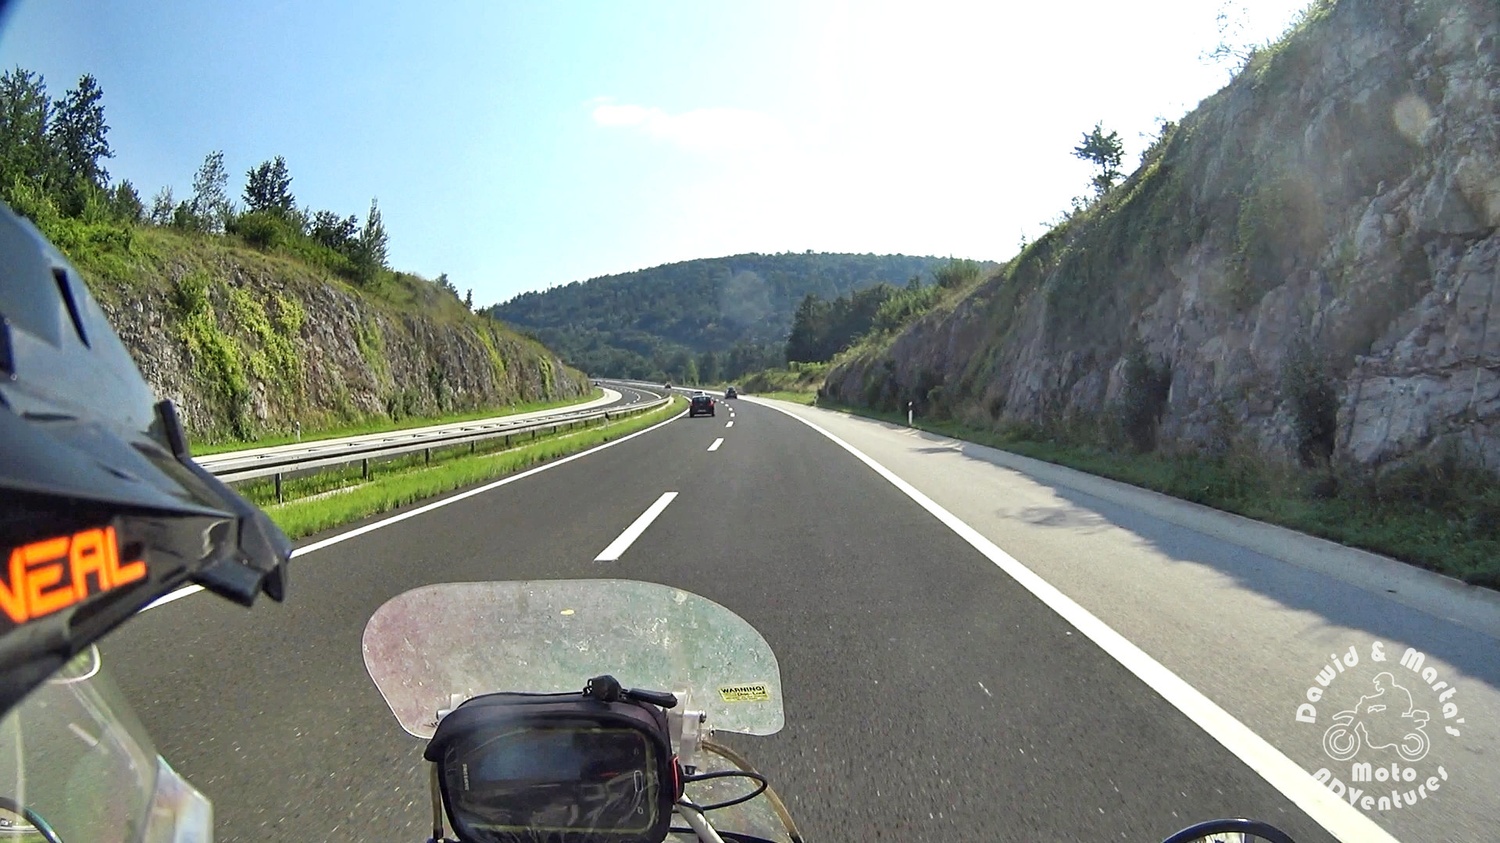 Snapshot from Croatia road E65